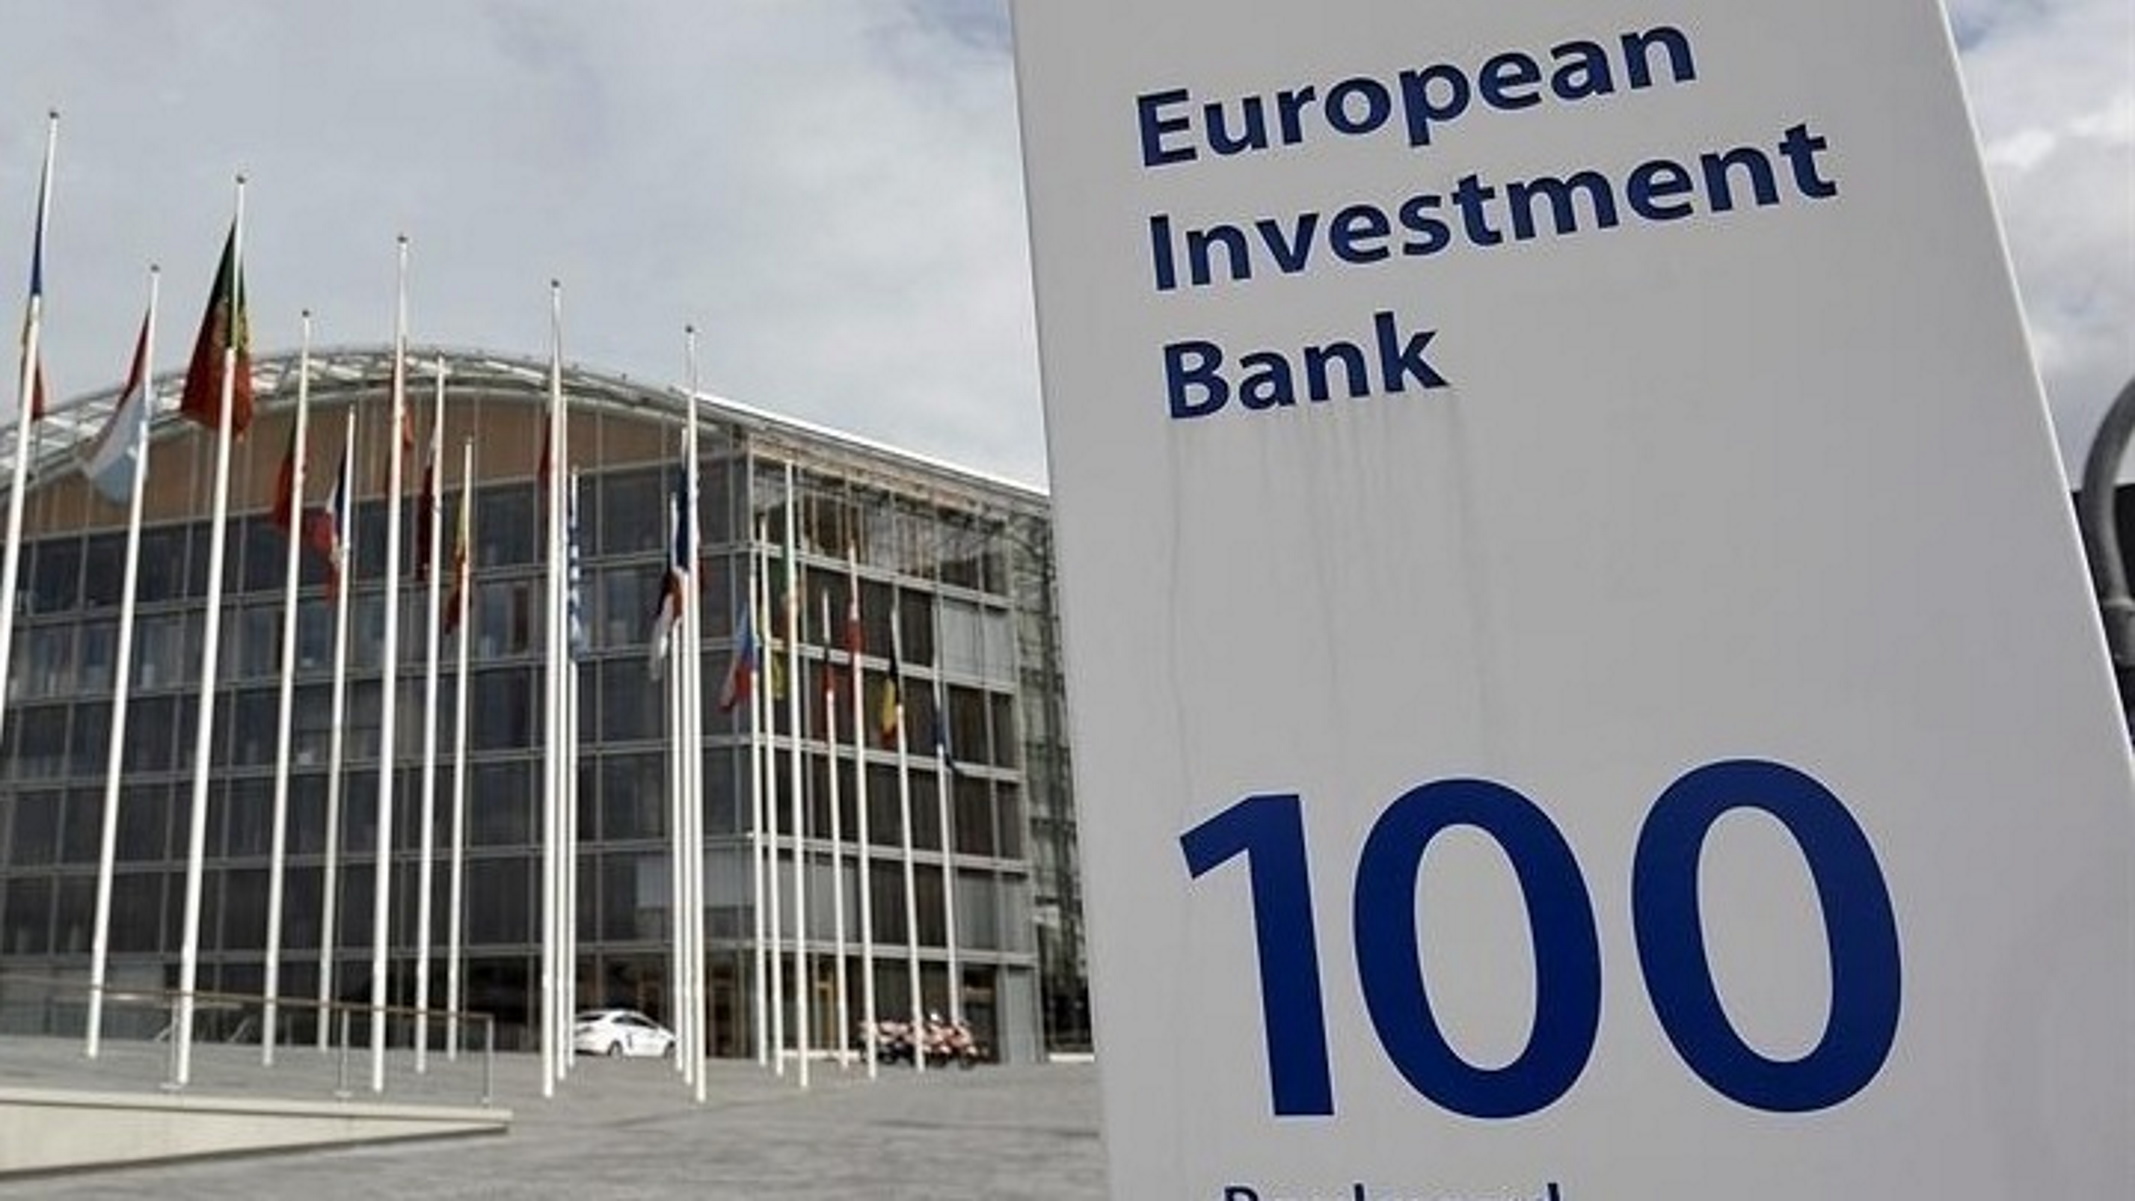 Η Ευρωπαϊκή Τράπεζα Επενδύσεων δίνει 190 εκατ. ευρώ για κατασκευή φοιτητικών εστιών στην Ελλάδα